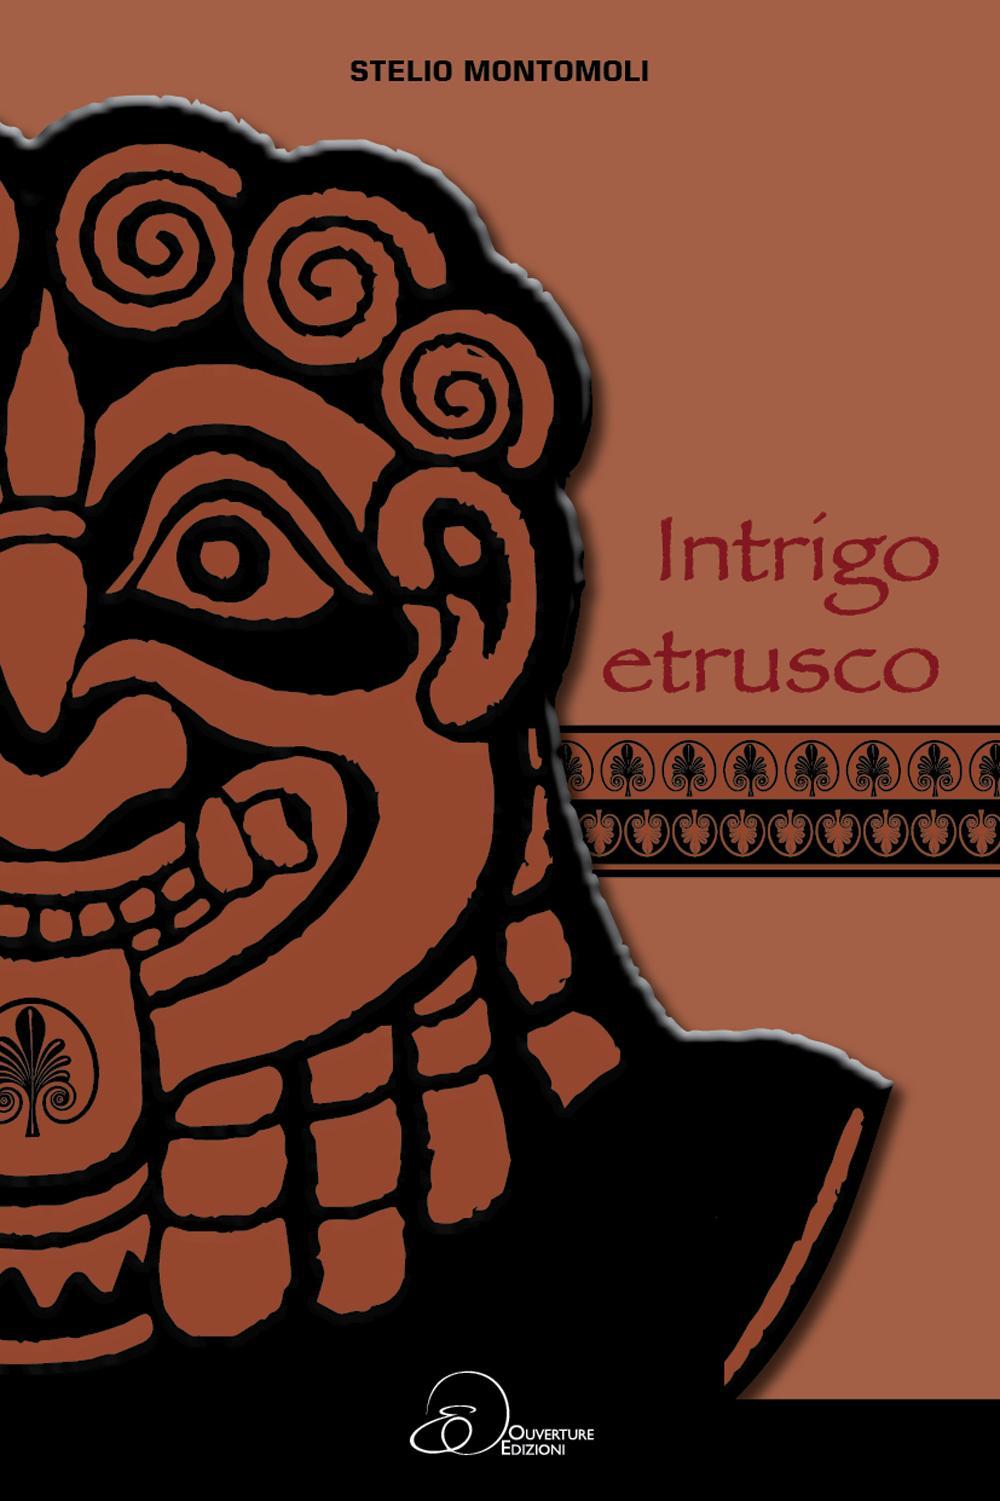 Intrigo etrusco